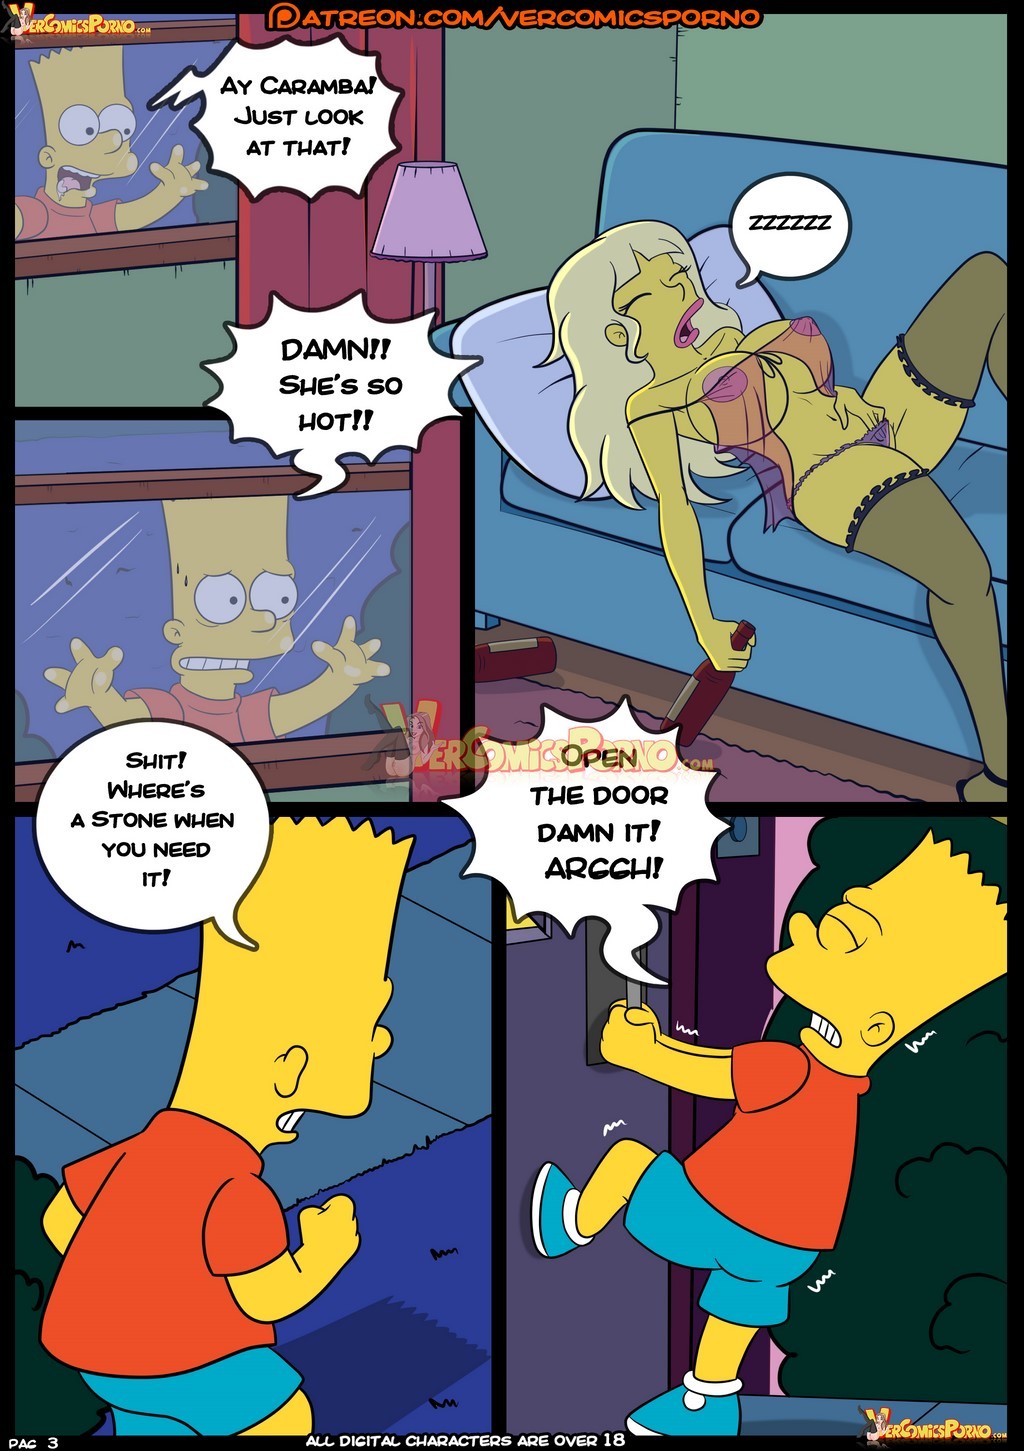 Simpsons Cartoon Porn Comic Impregnation - croc] - The Simpsons 8 (the simpsons) porn comic. Big breasts porn comics.